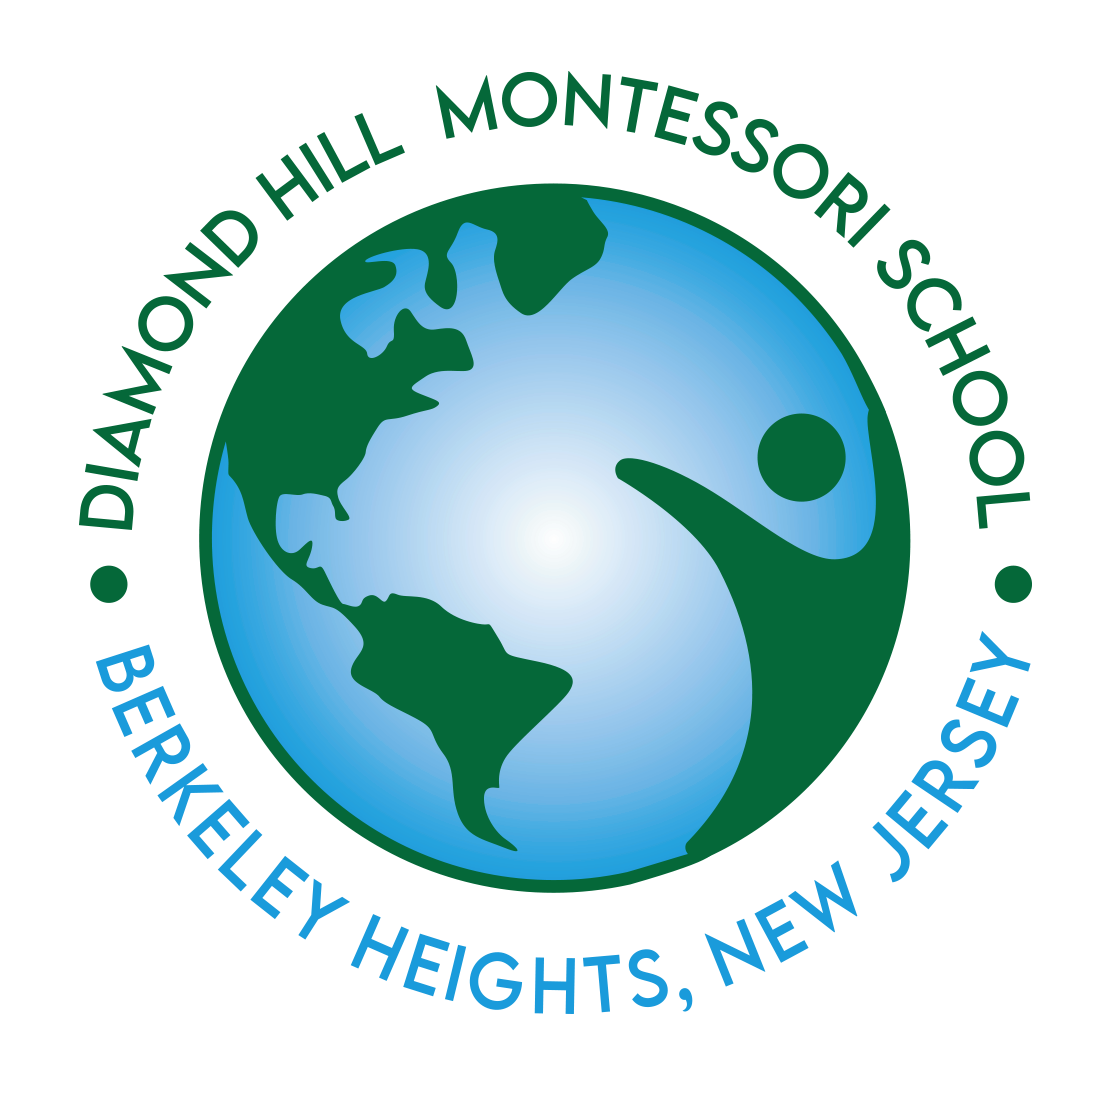 Diamond Hill Montessori School